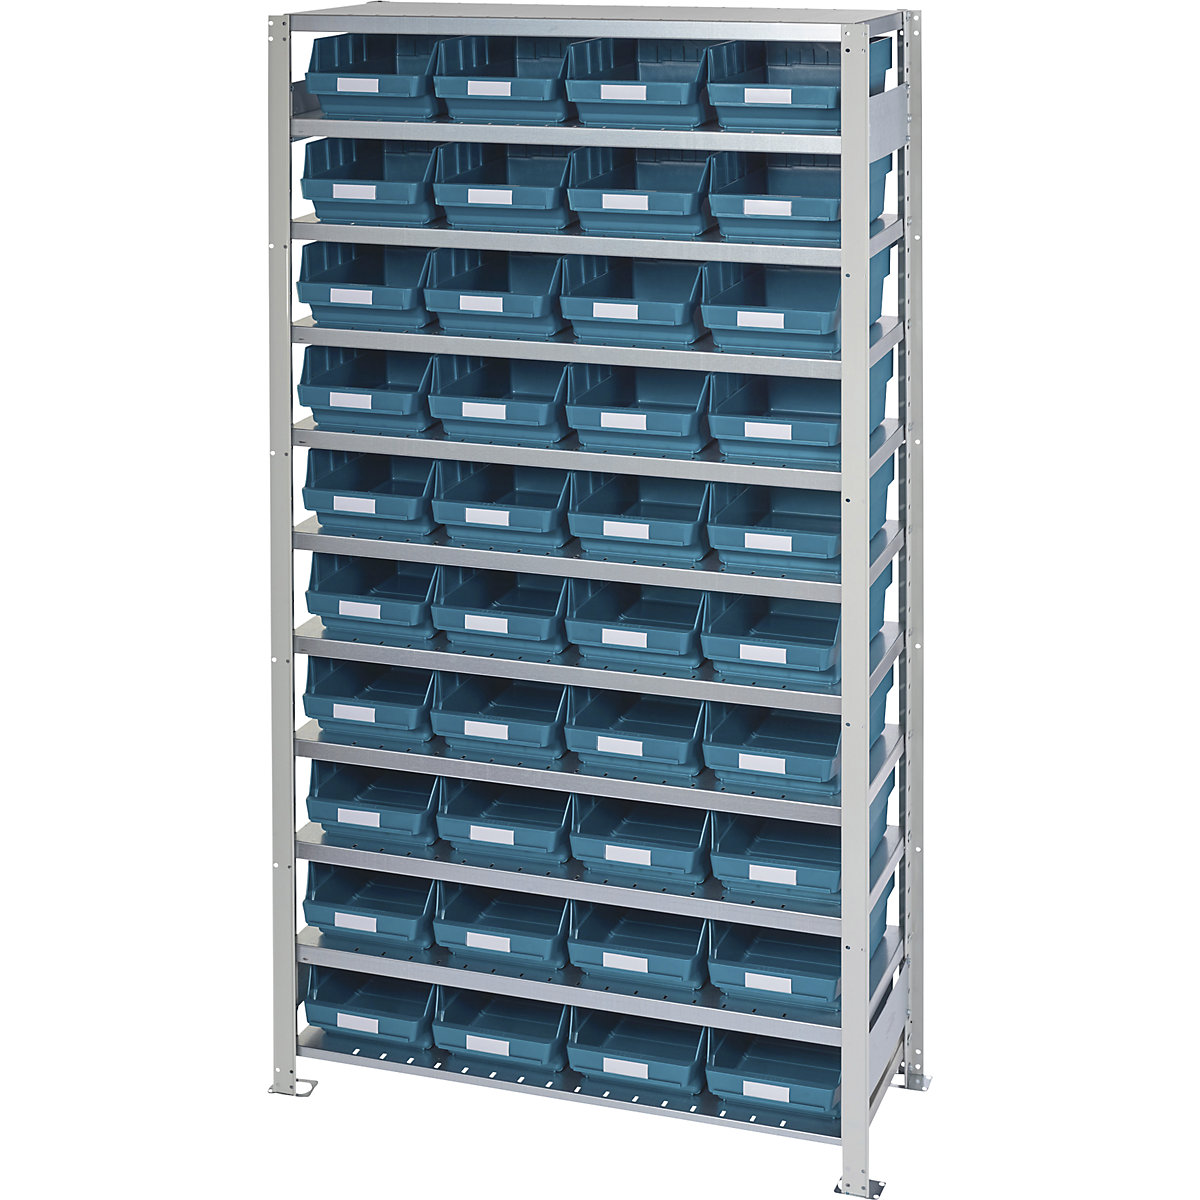 Estante de encaixar com caixas para estante – STEMO, altura da estante 2100 mm, estante básica, profundidade 400 mm, 40 caixas verdes-30